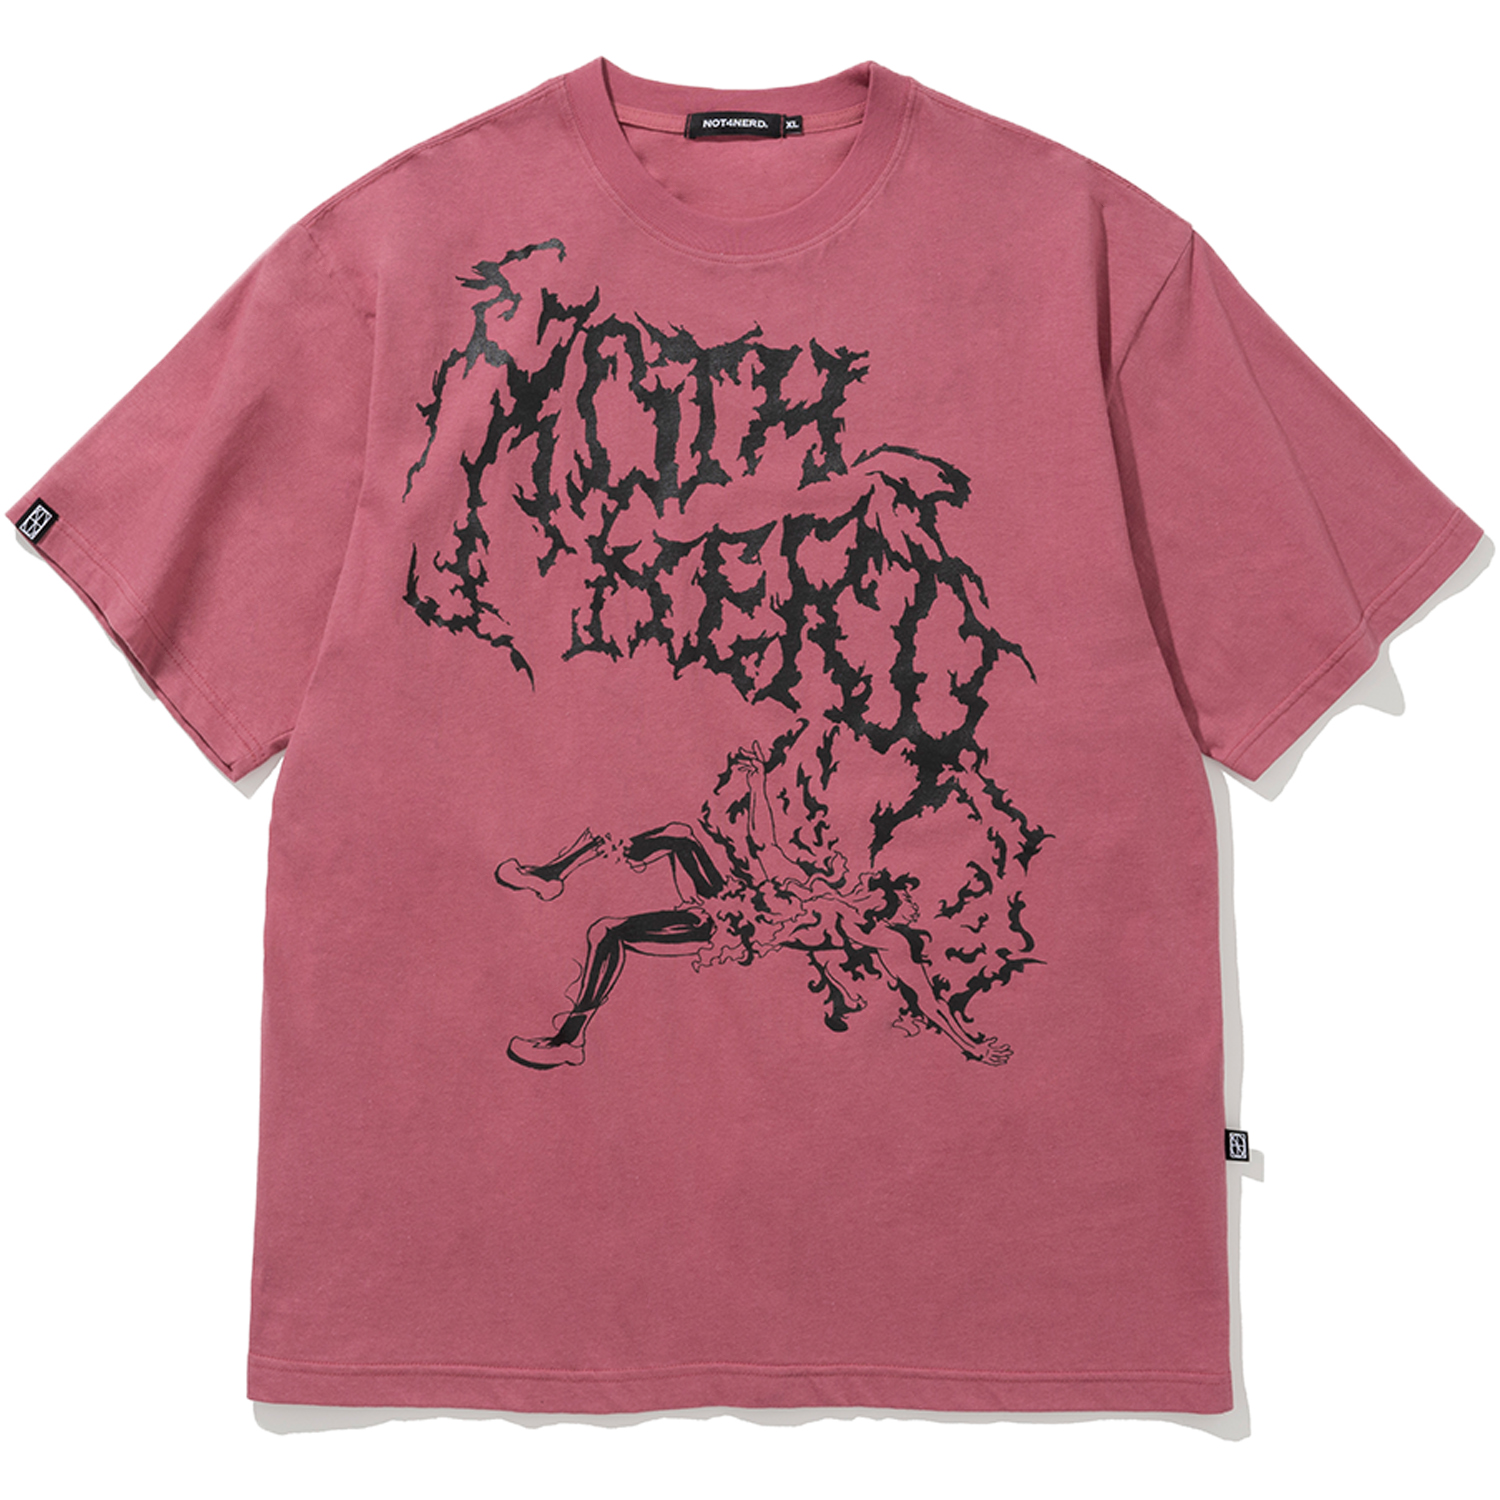 [4월 19일 예약배송] Scream T-Shirts - Dark Pink,NOT4NERD